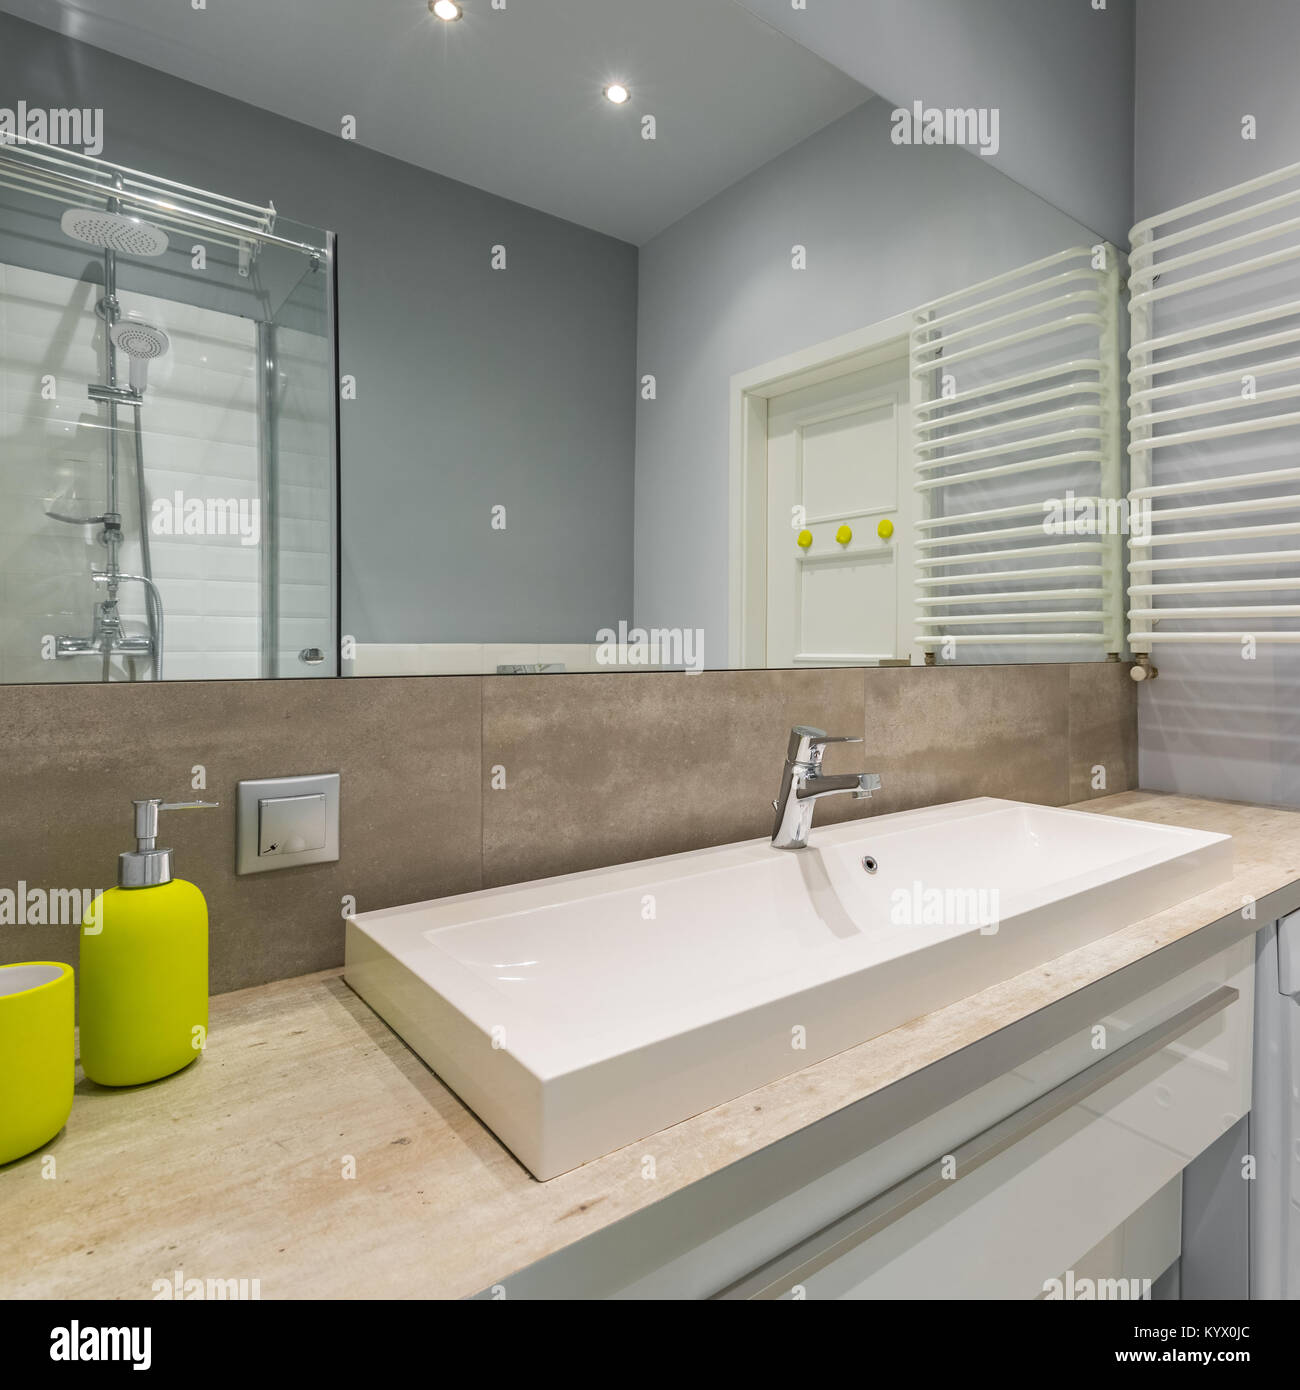 Schönes Badezimmer mit großem Spiegel, elegante Waschbecken und Dusche  Stockfotografie - Alamy